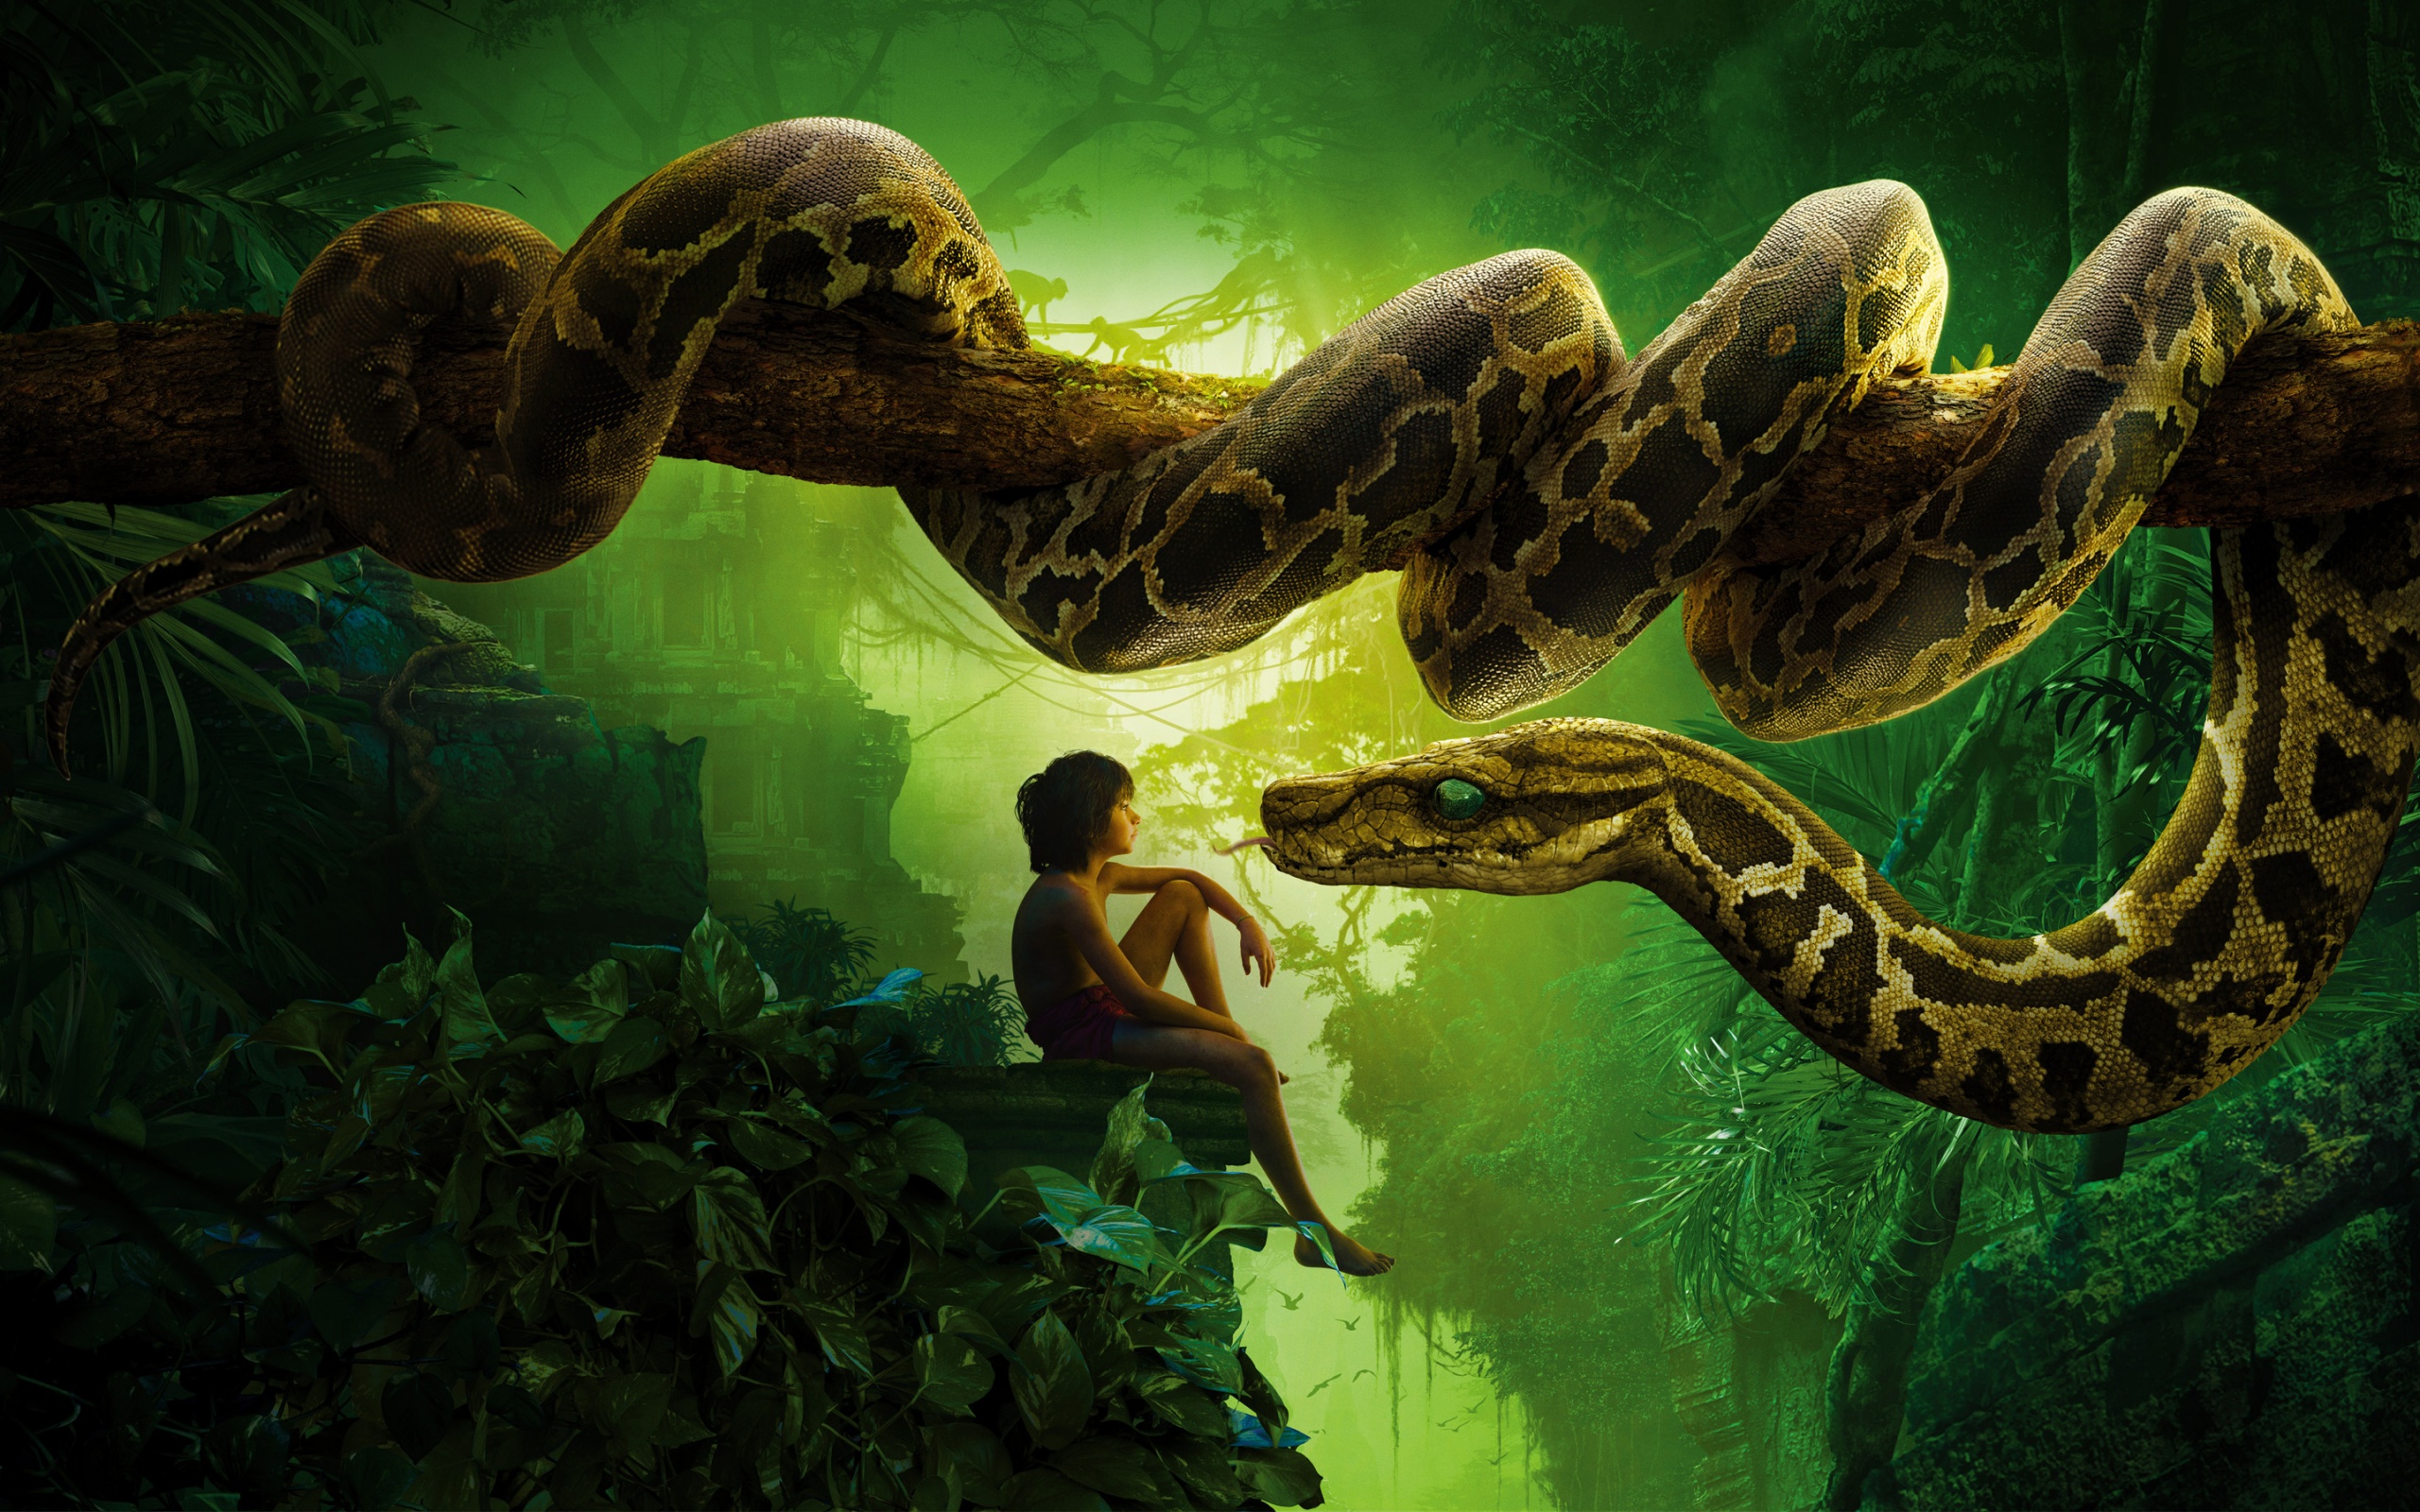 Jungle Book Snake Kaa Mowgli Wallpaper In Jpg Format For